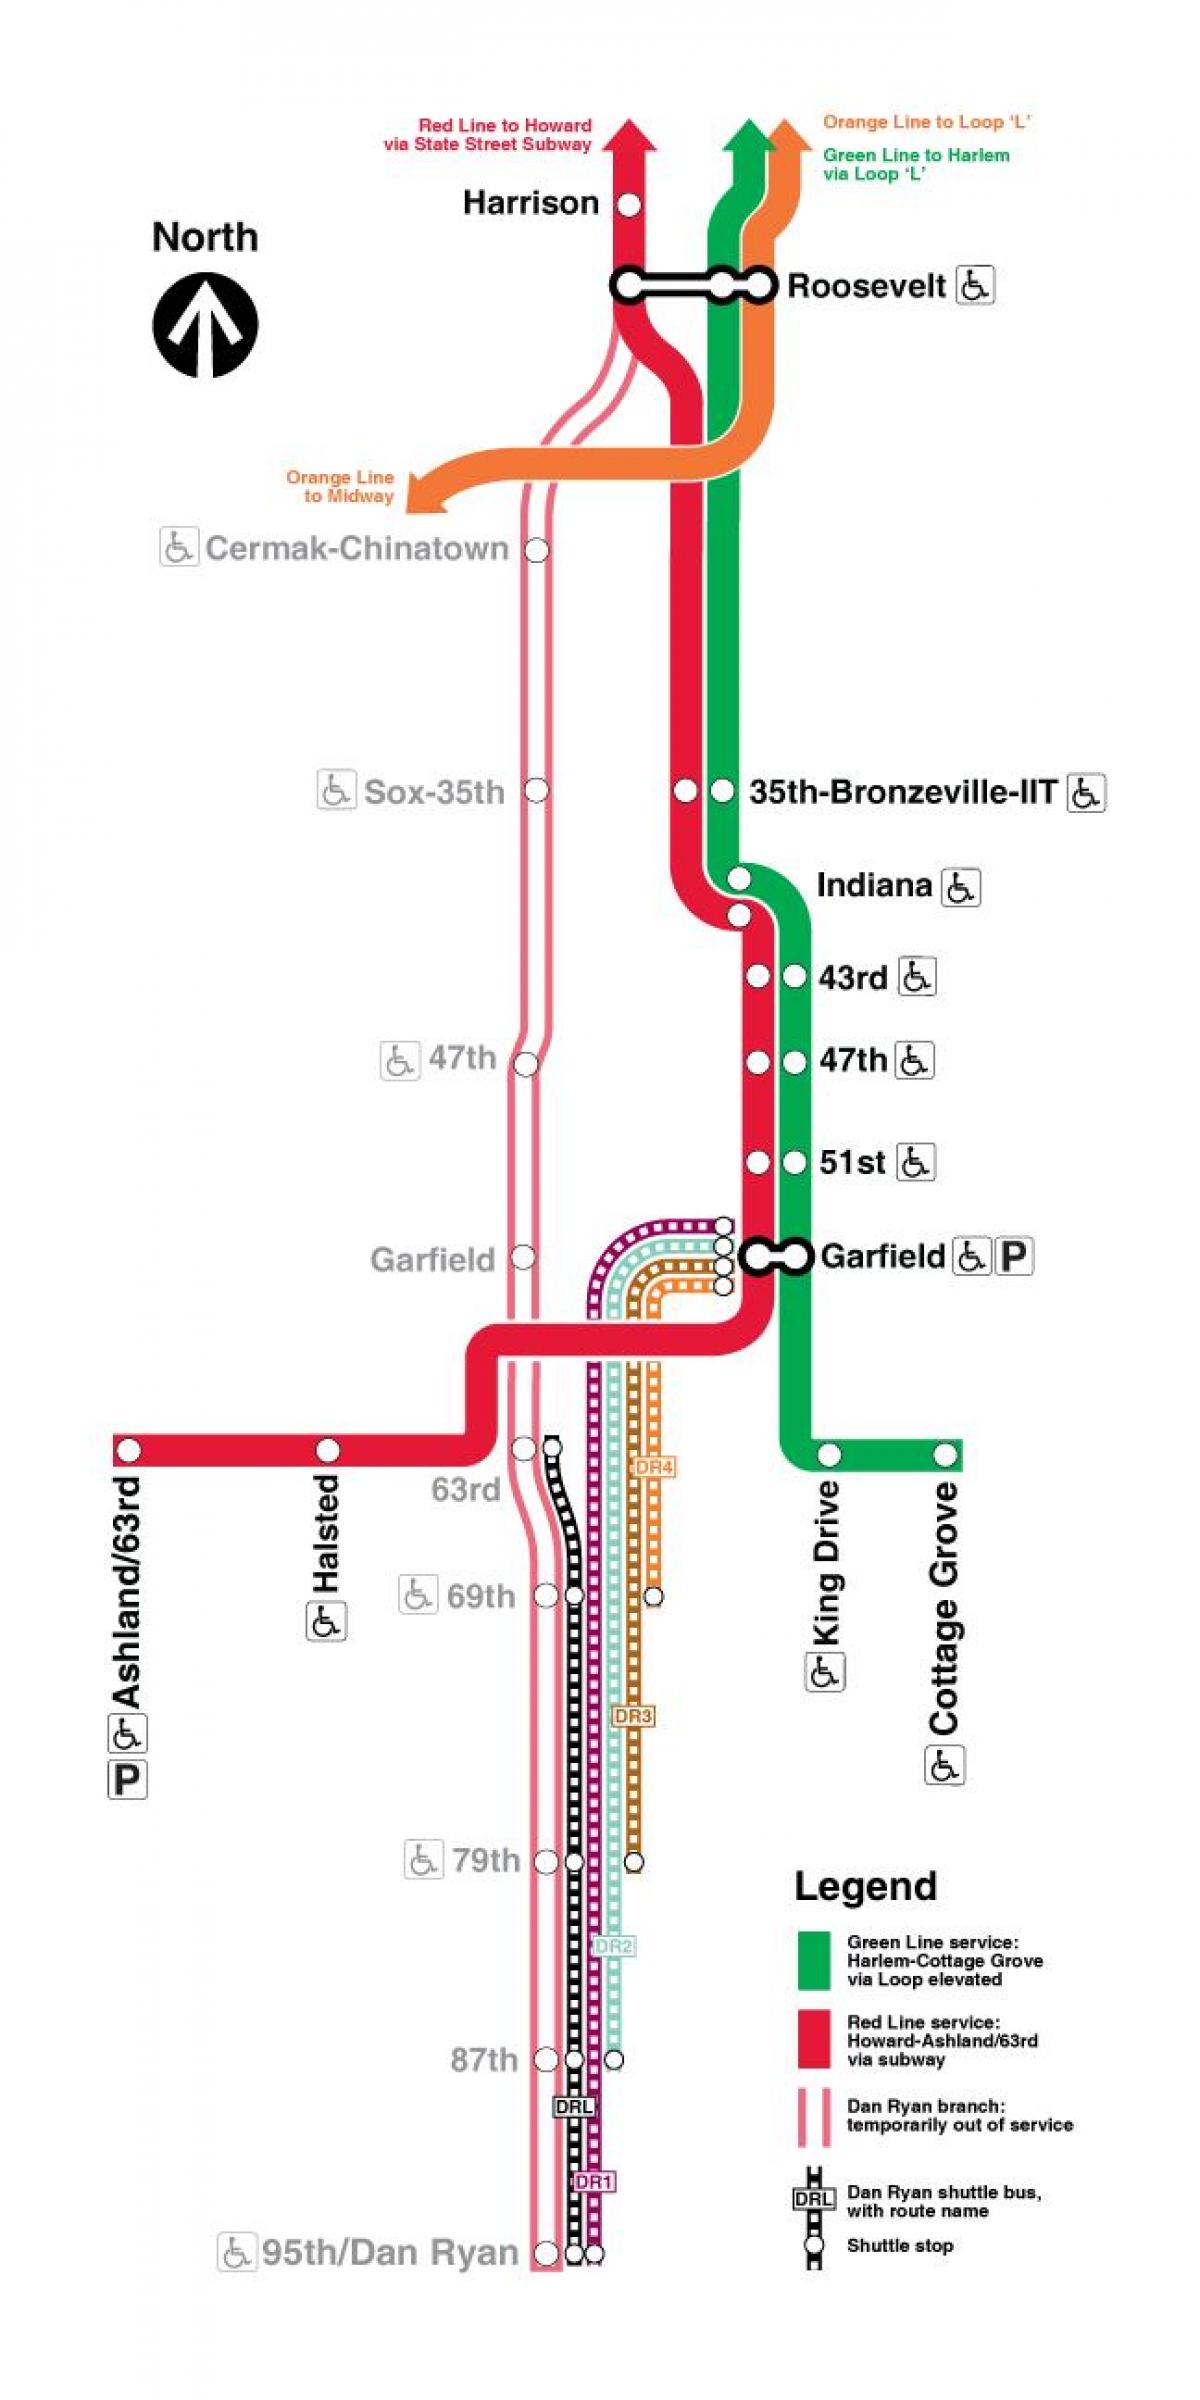 Chicago trem mapa da linha vermelha